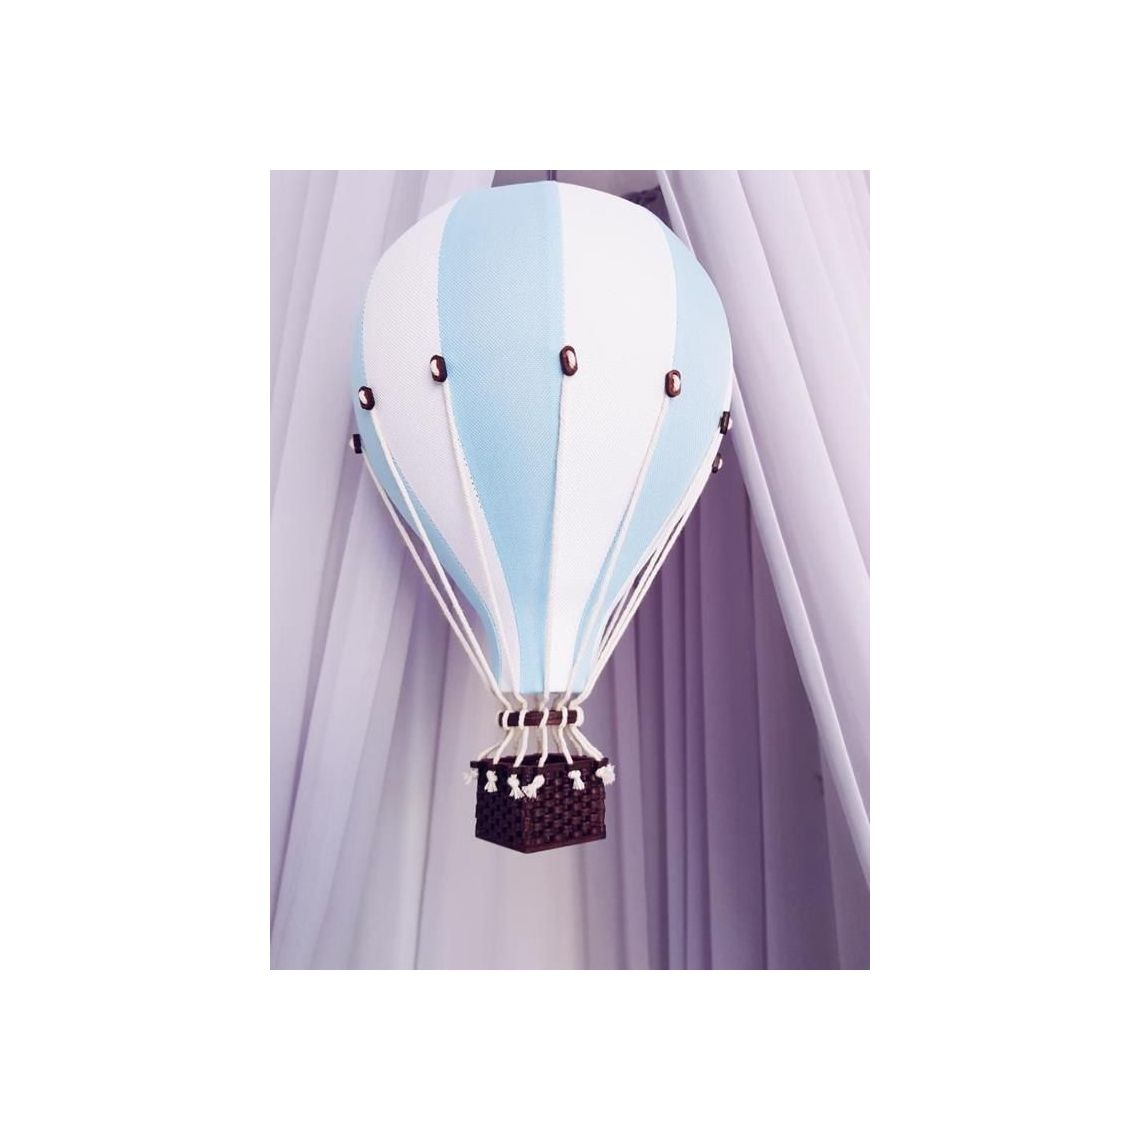 Balon dekoracyjny XXL - Super Balloon